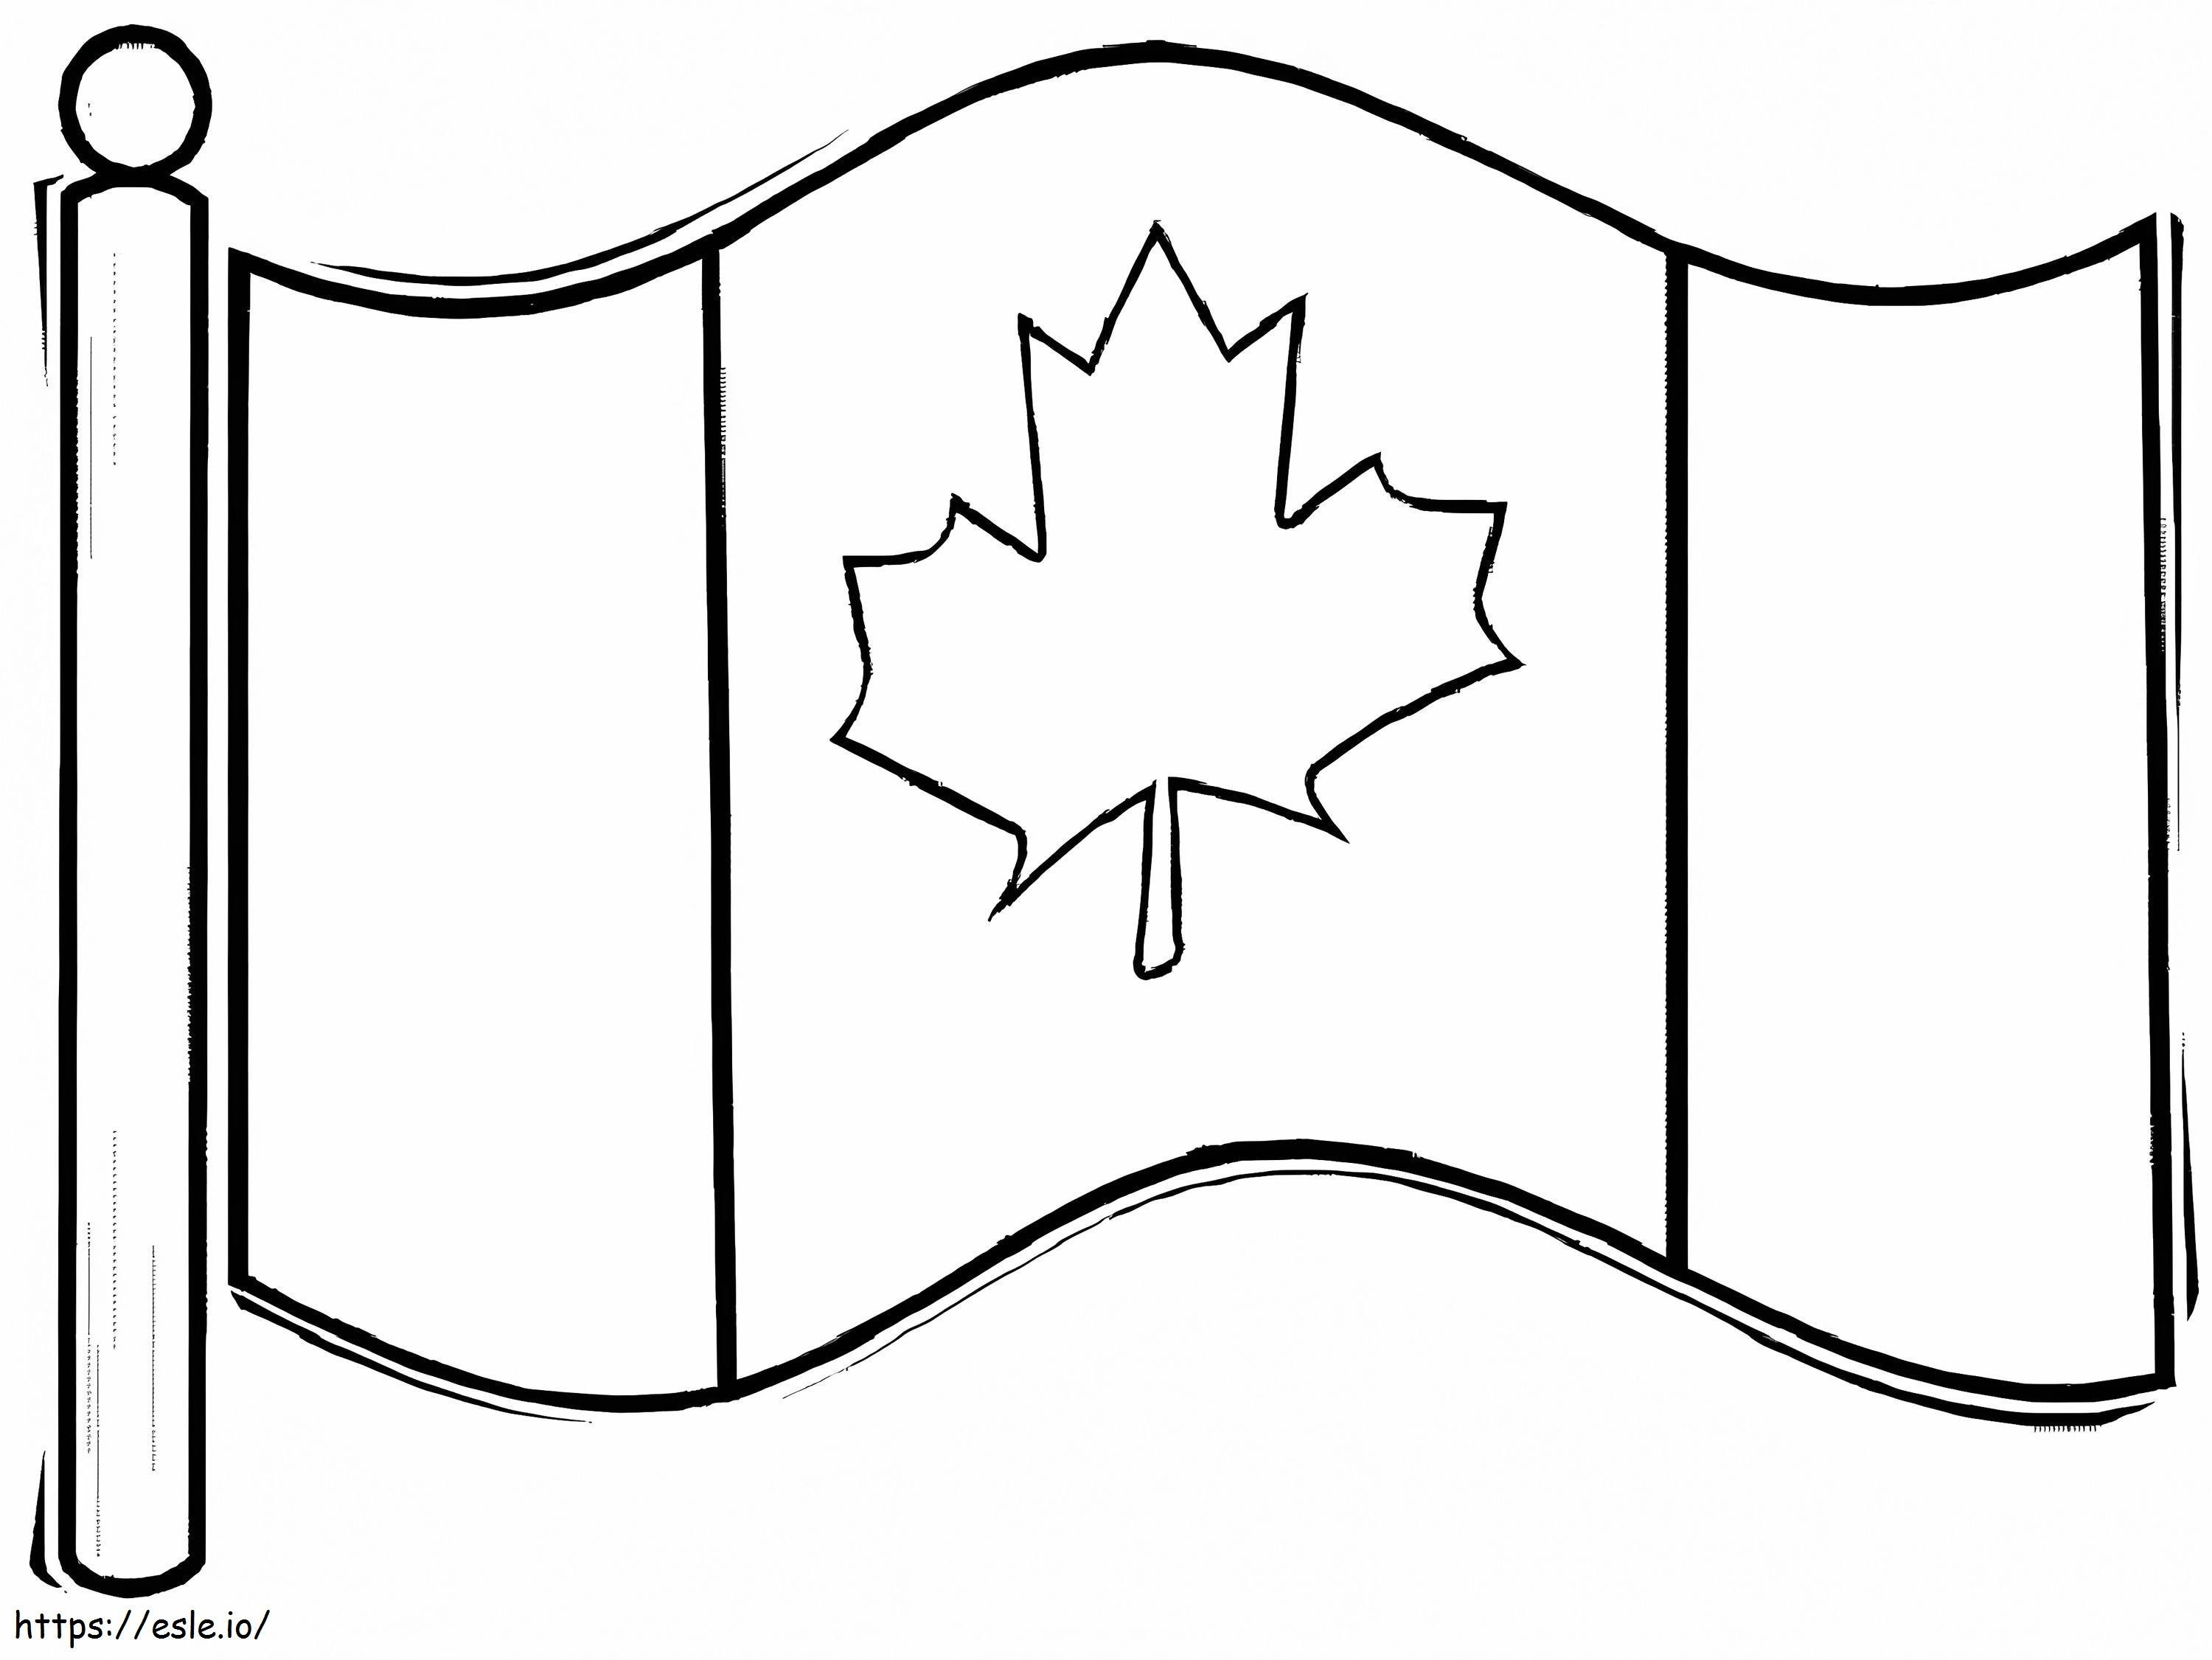 カナダの国旗 4 ぬりえ - 塗り絵